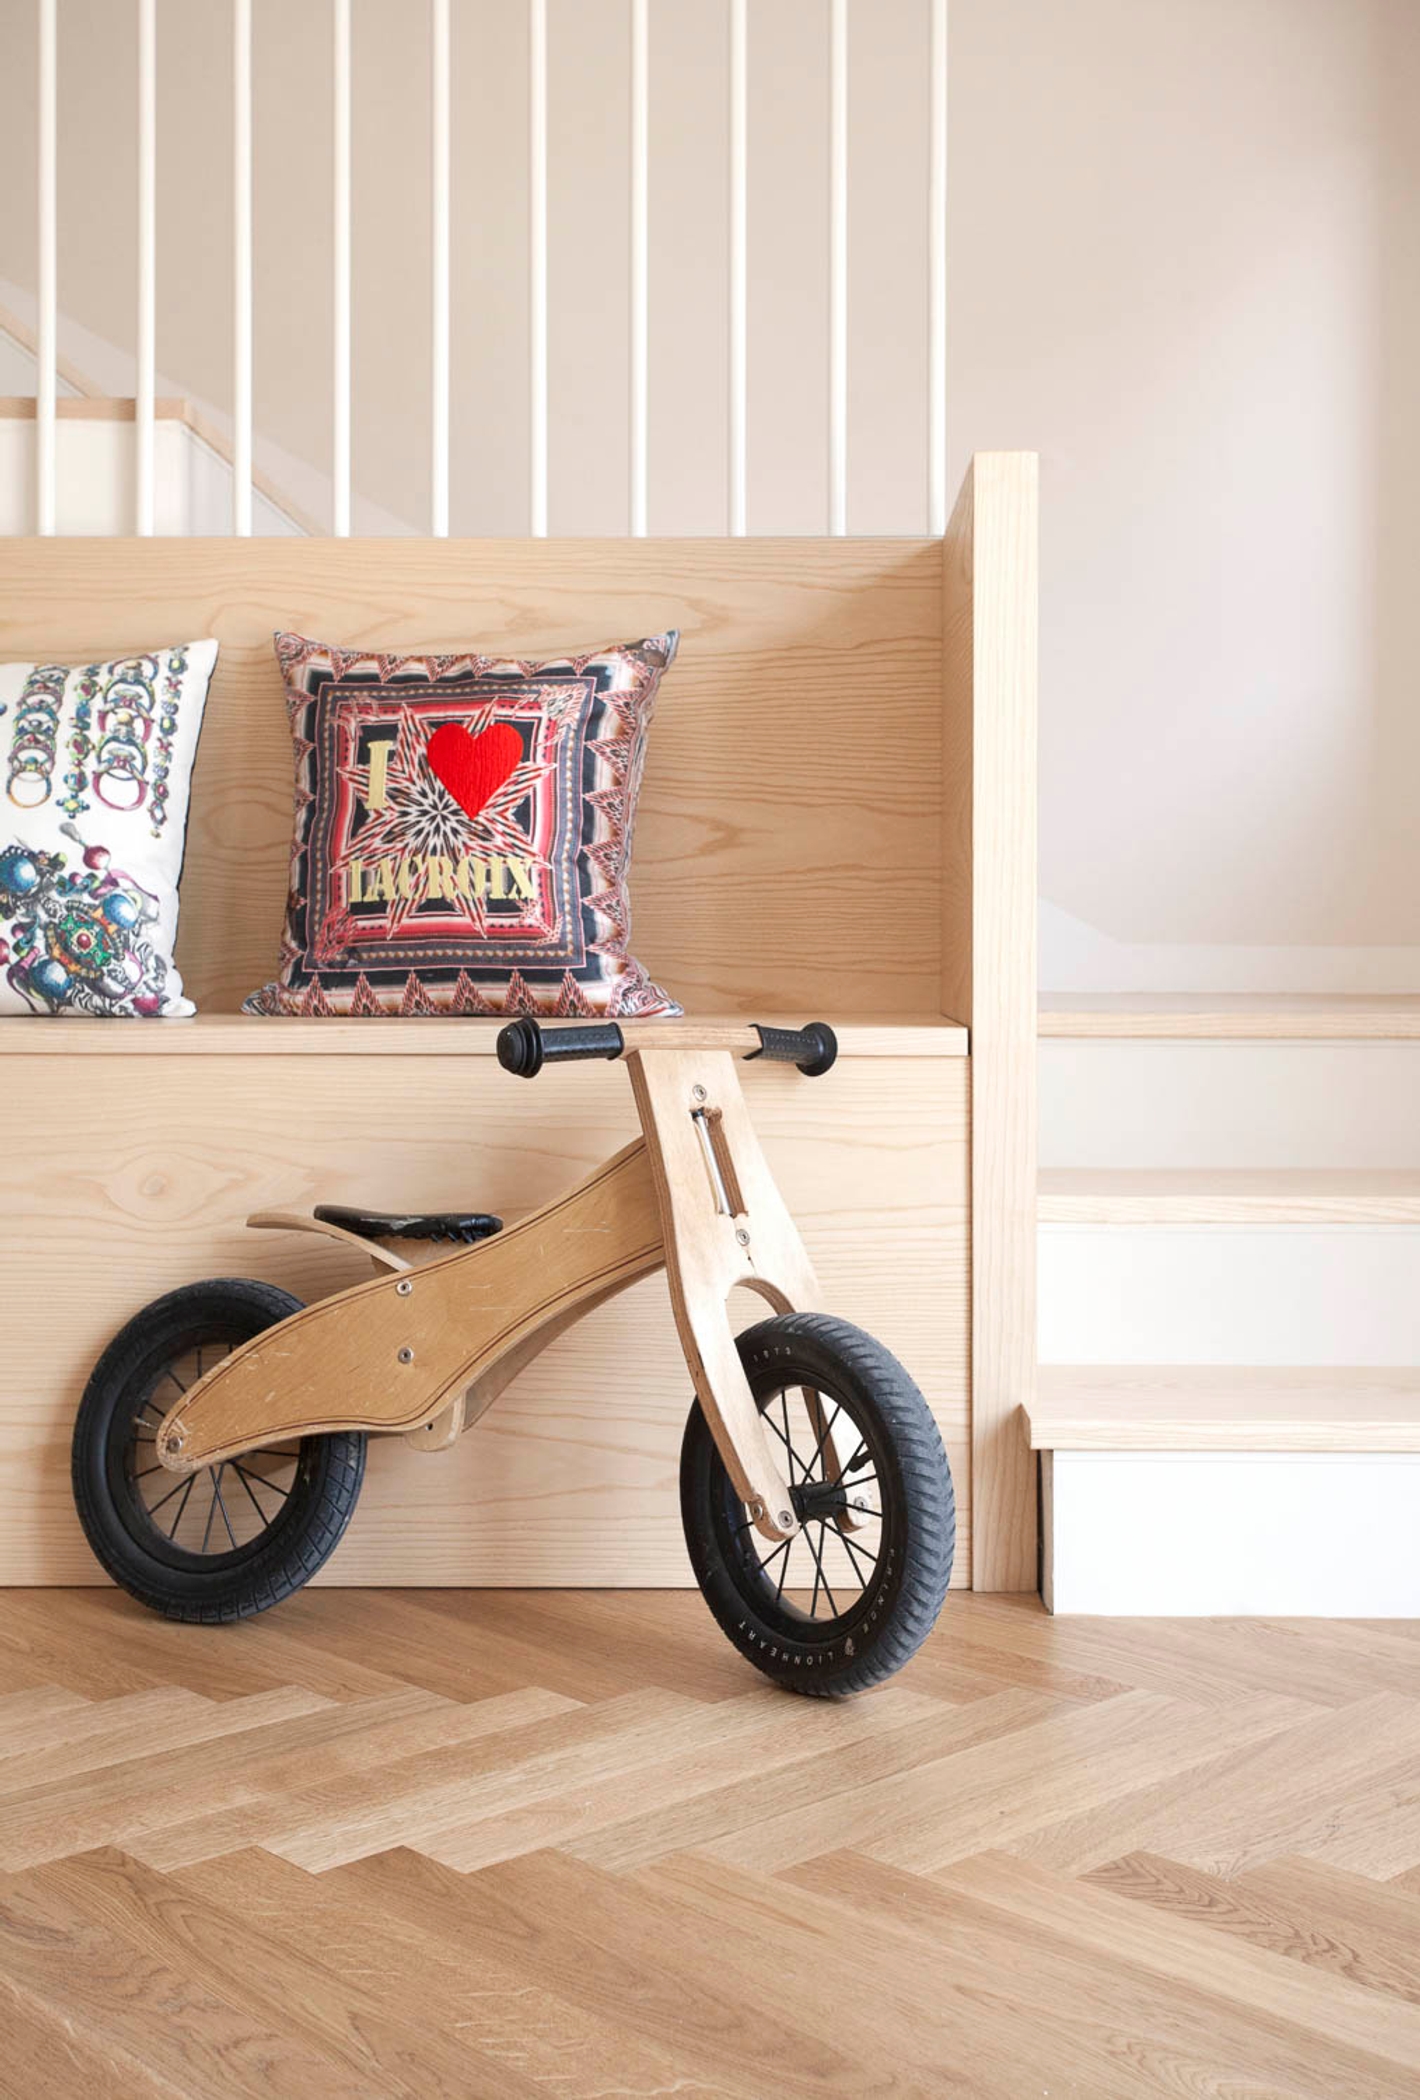 foto a colori con dettaglio scala e bici da bimgo in legno